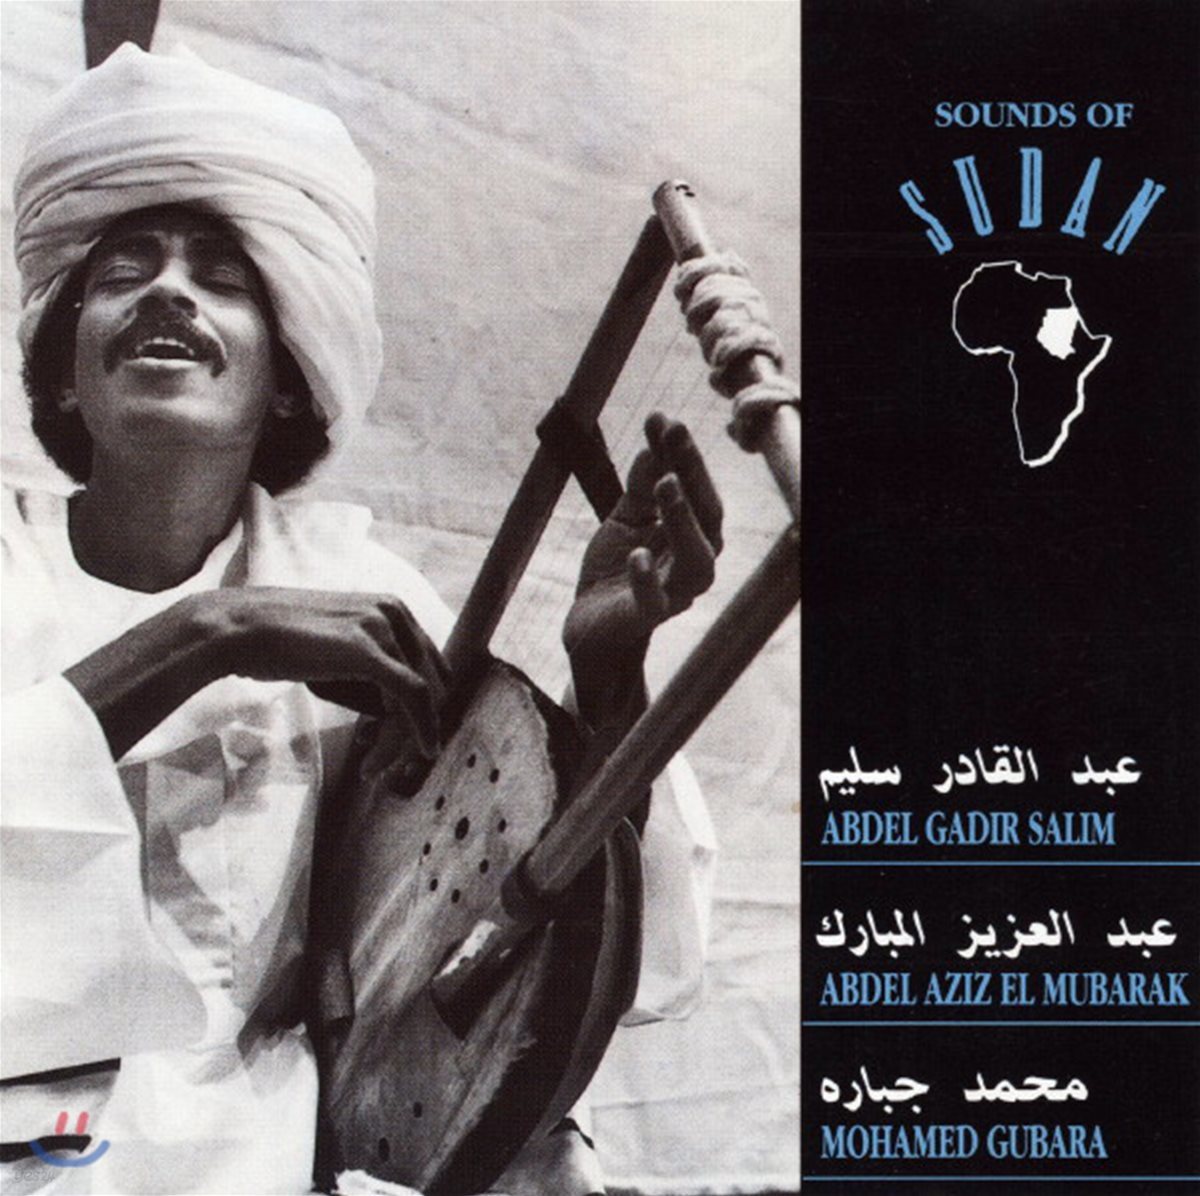 수단의 음악 (Sounds Of Sudan)